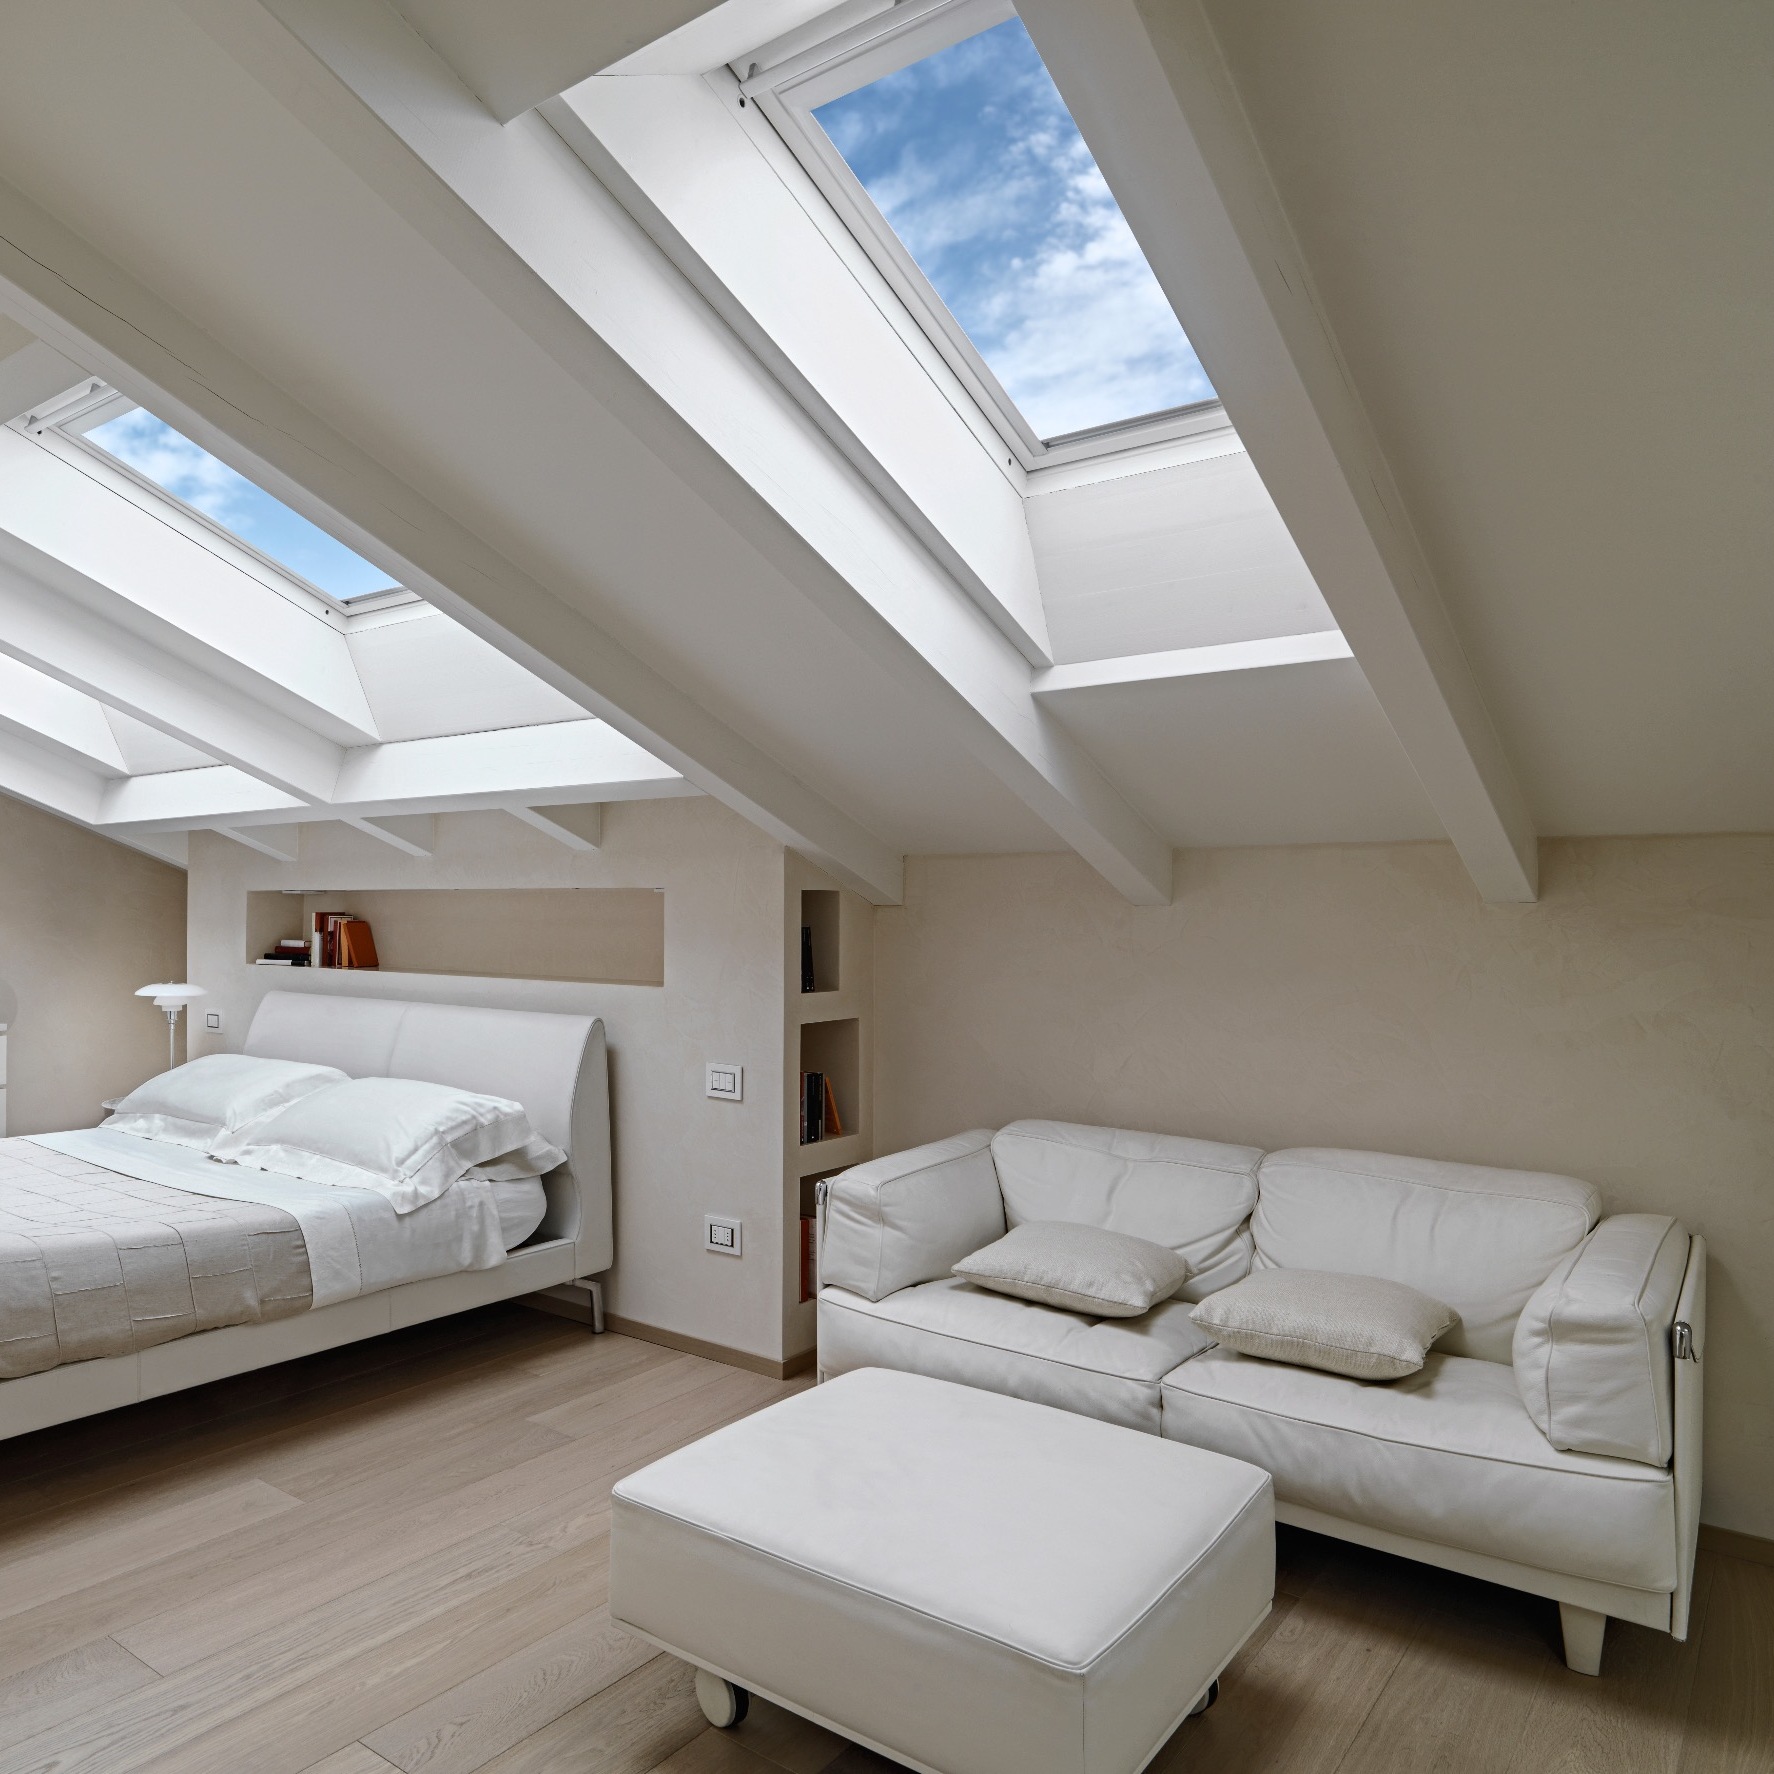 skylight in a bedroom